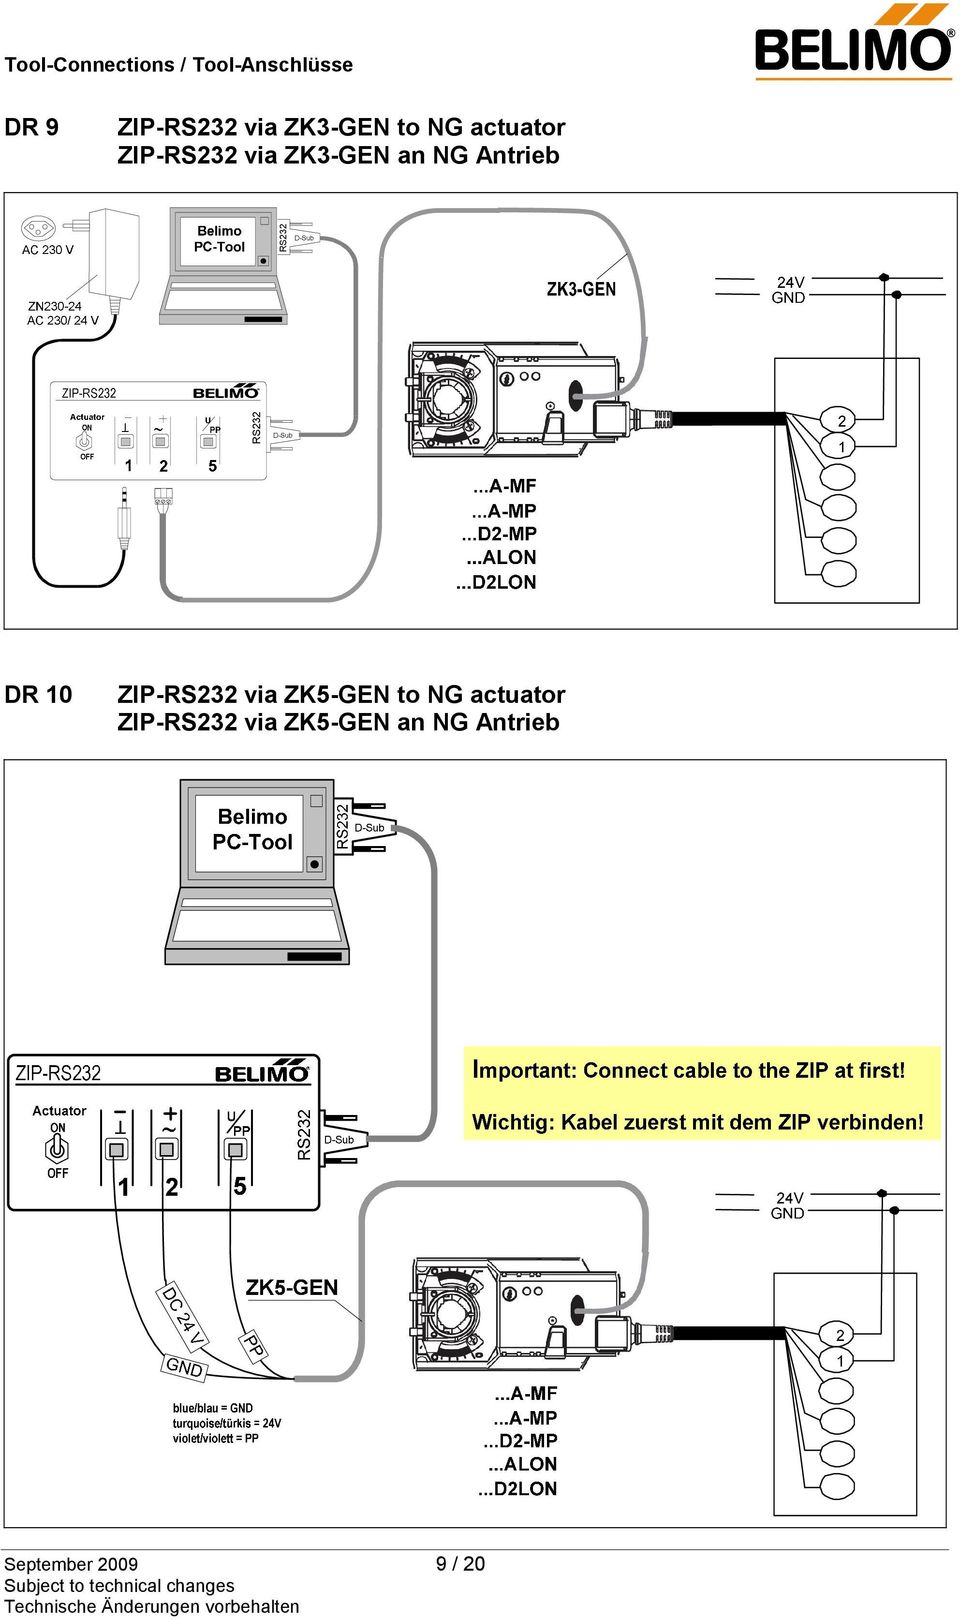 DR 10 ZIP-RS232 via ZK5-GEN to NG actuator